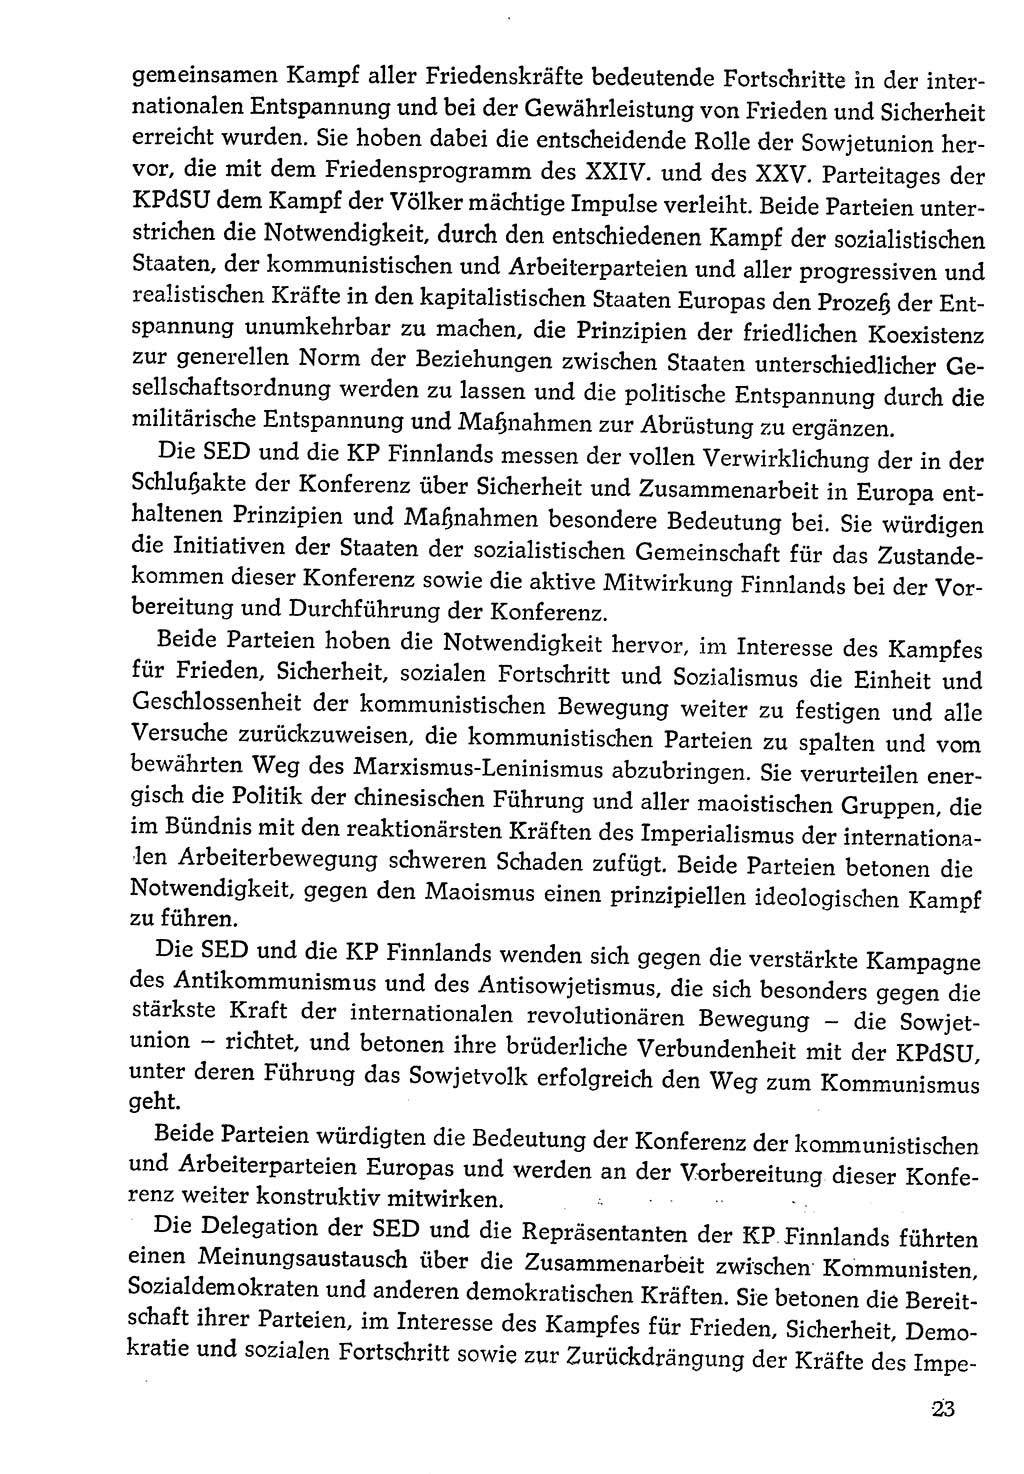 Dokumente der Sozialistischen Einheitspartei Deutschlands (SED) [Deutsche Demokratische Republik (DDR)] 1976-1977, Seite 23 (Dok. SED DDR 1976-1977, S. 23)